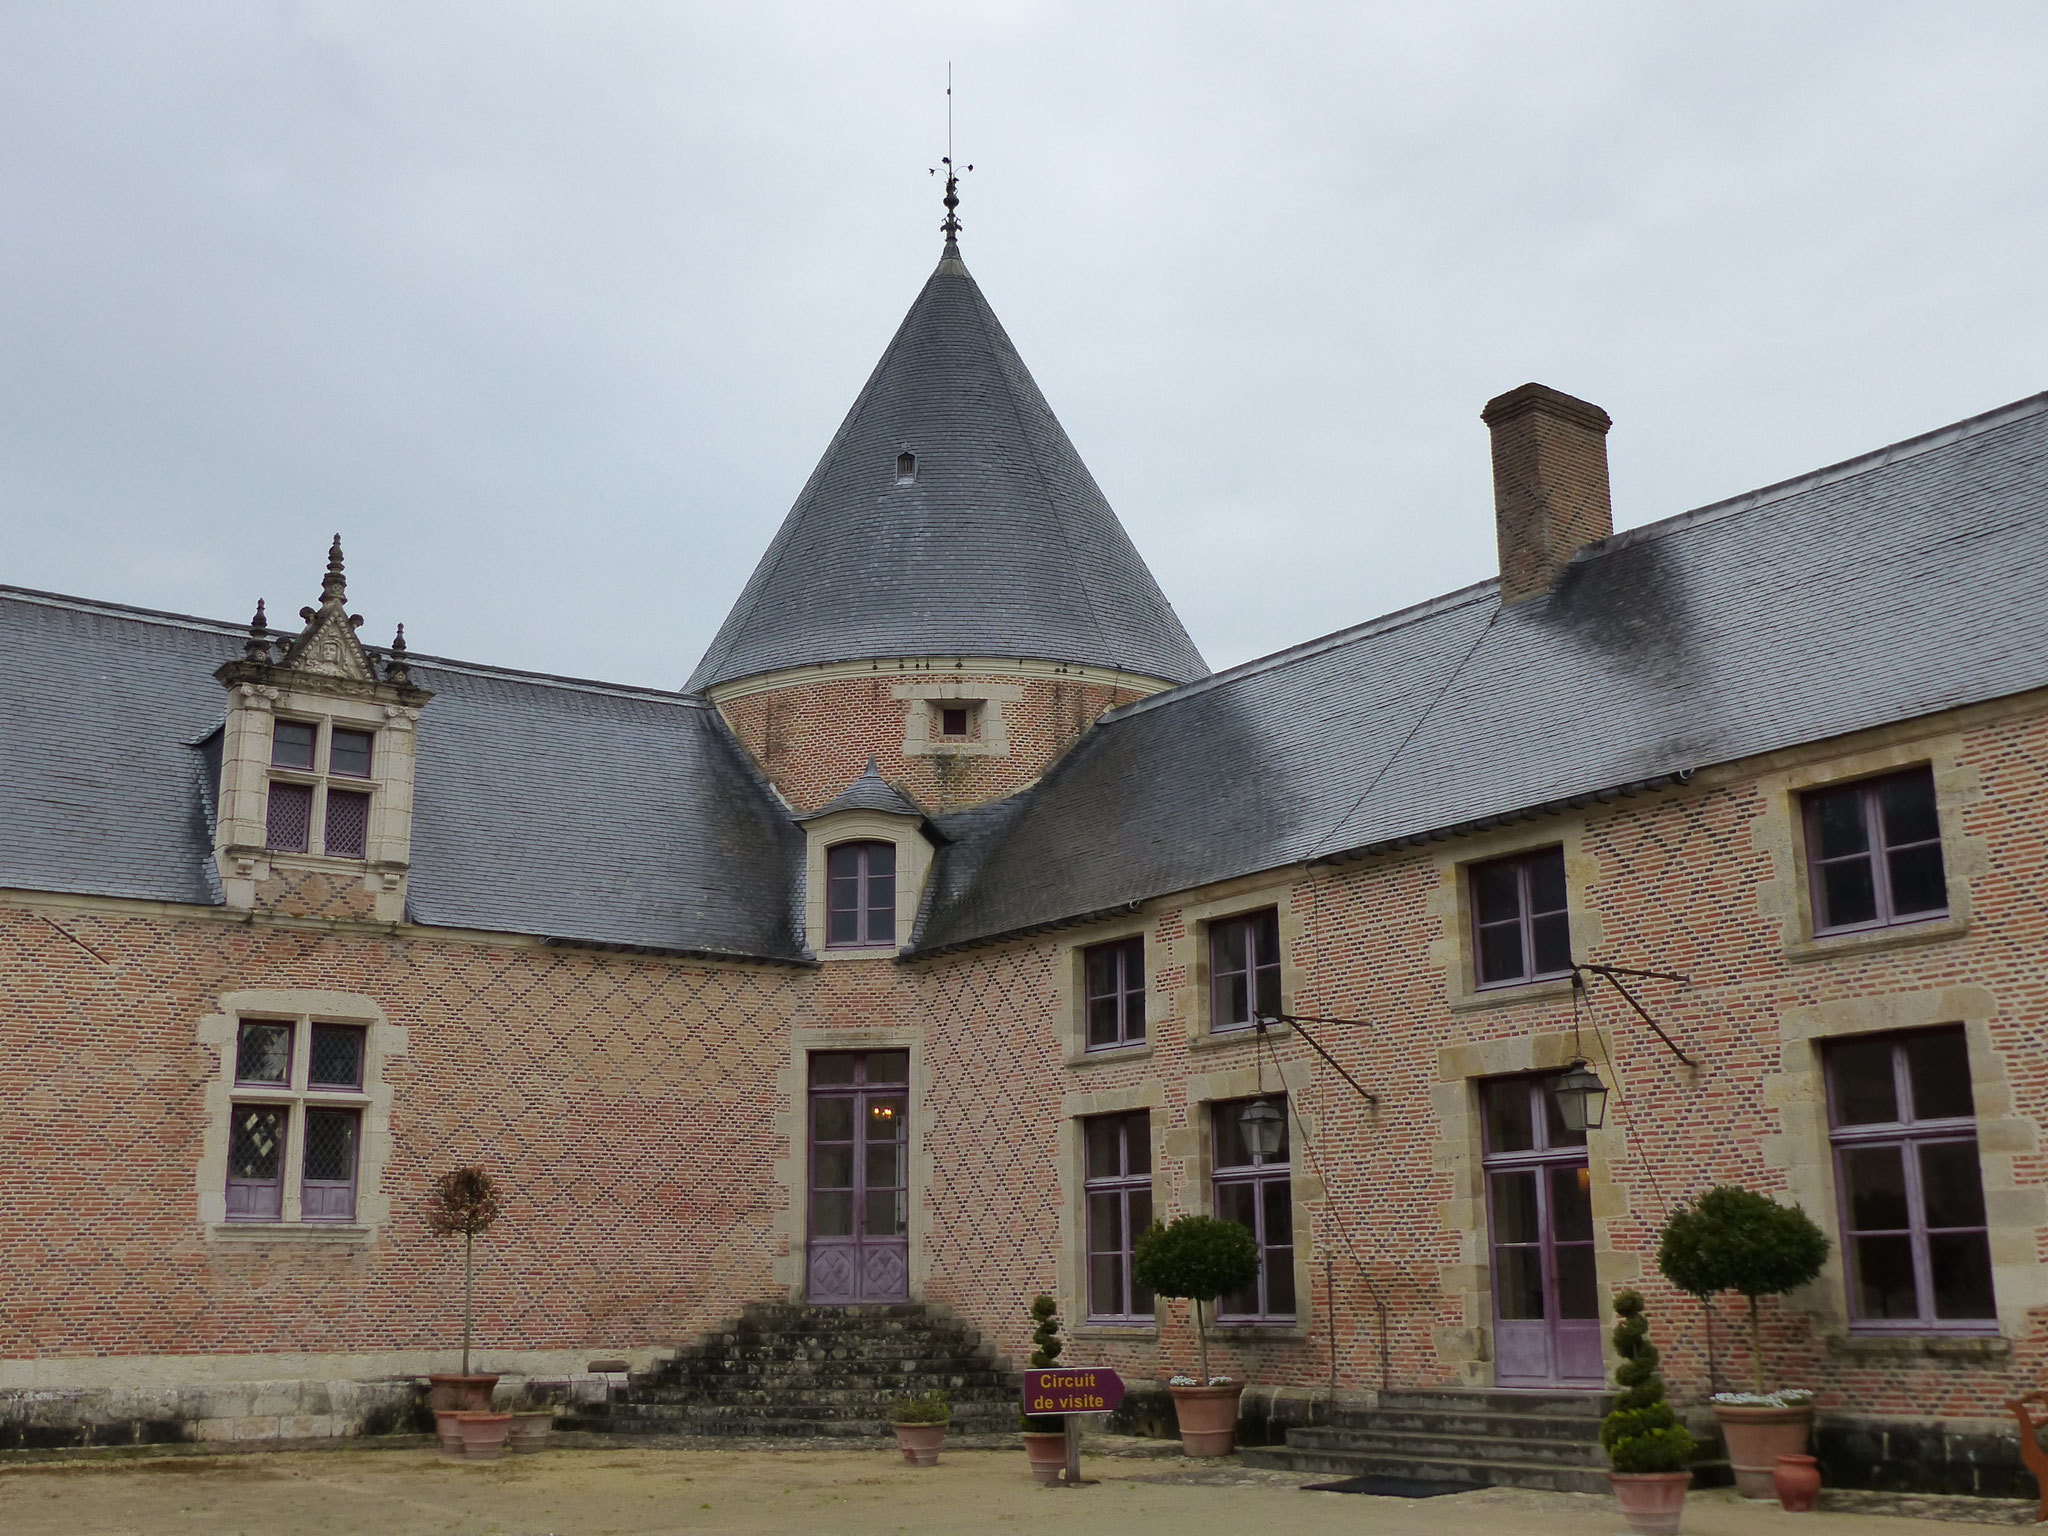 Chateau de Chamerolles